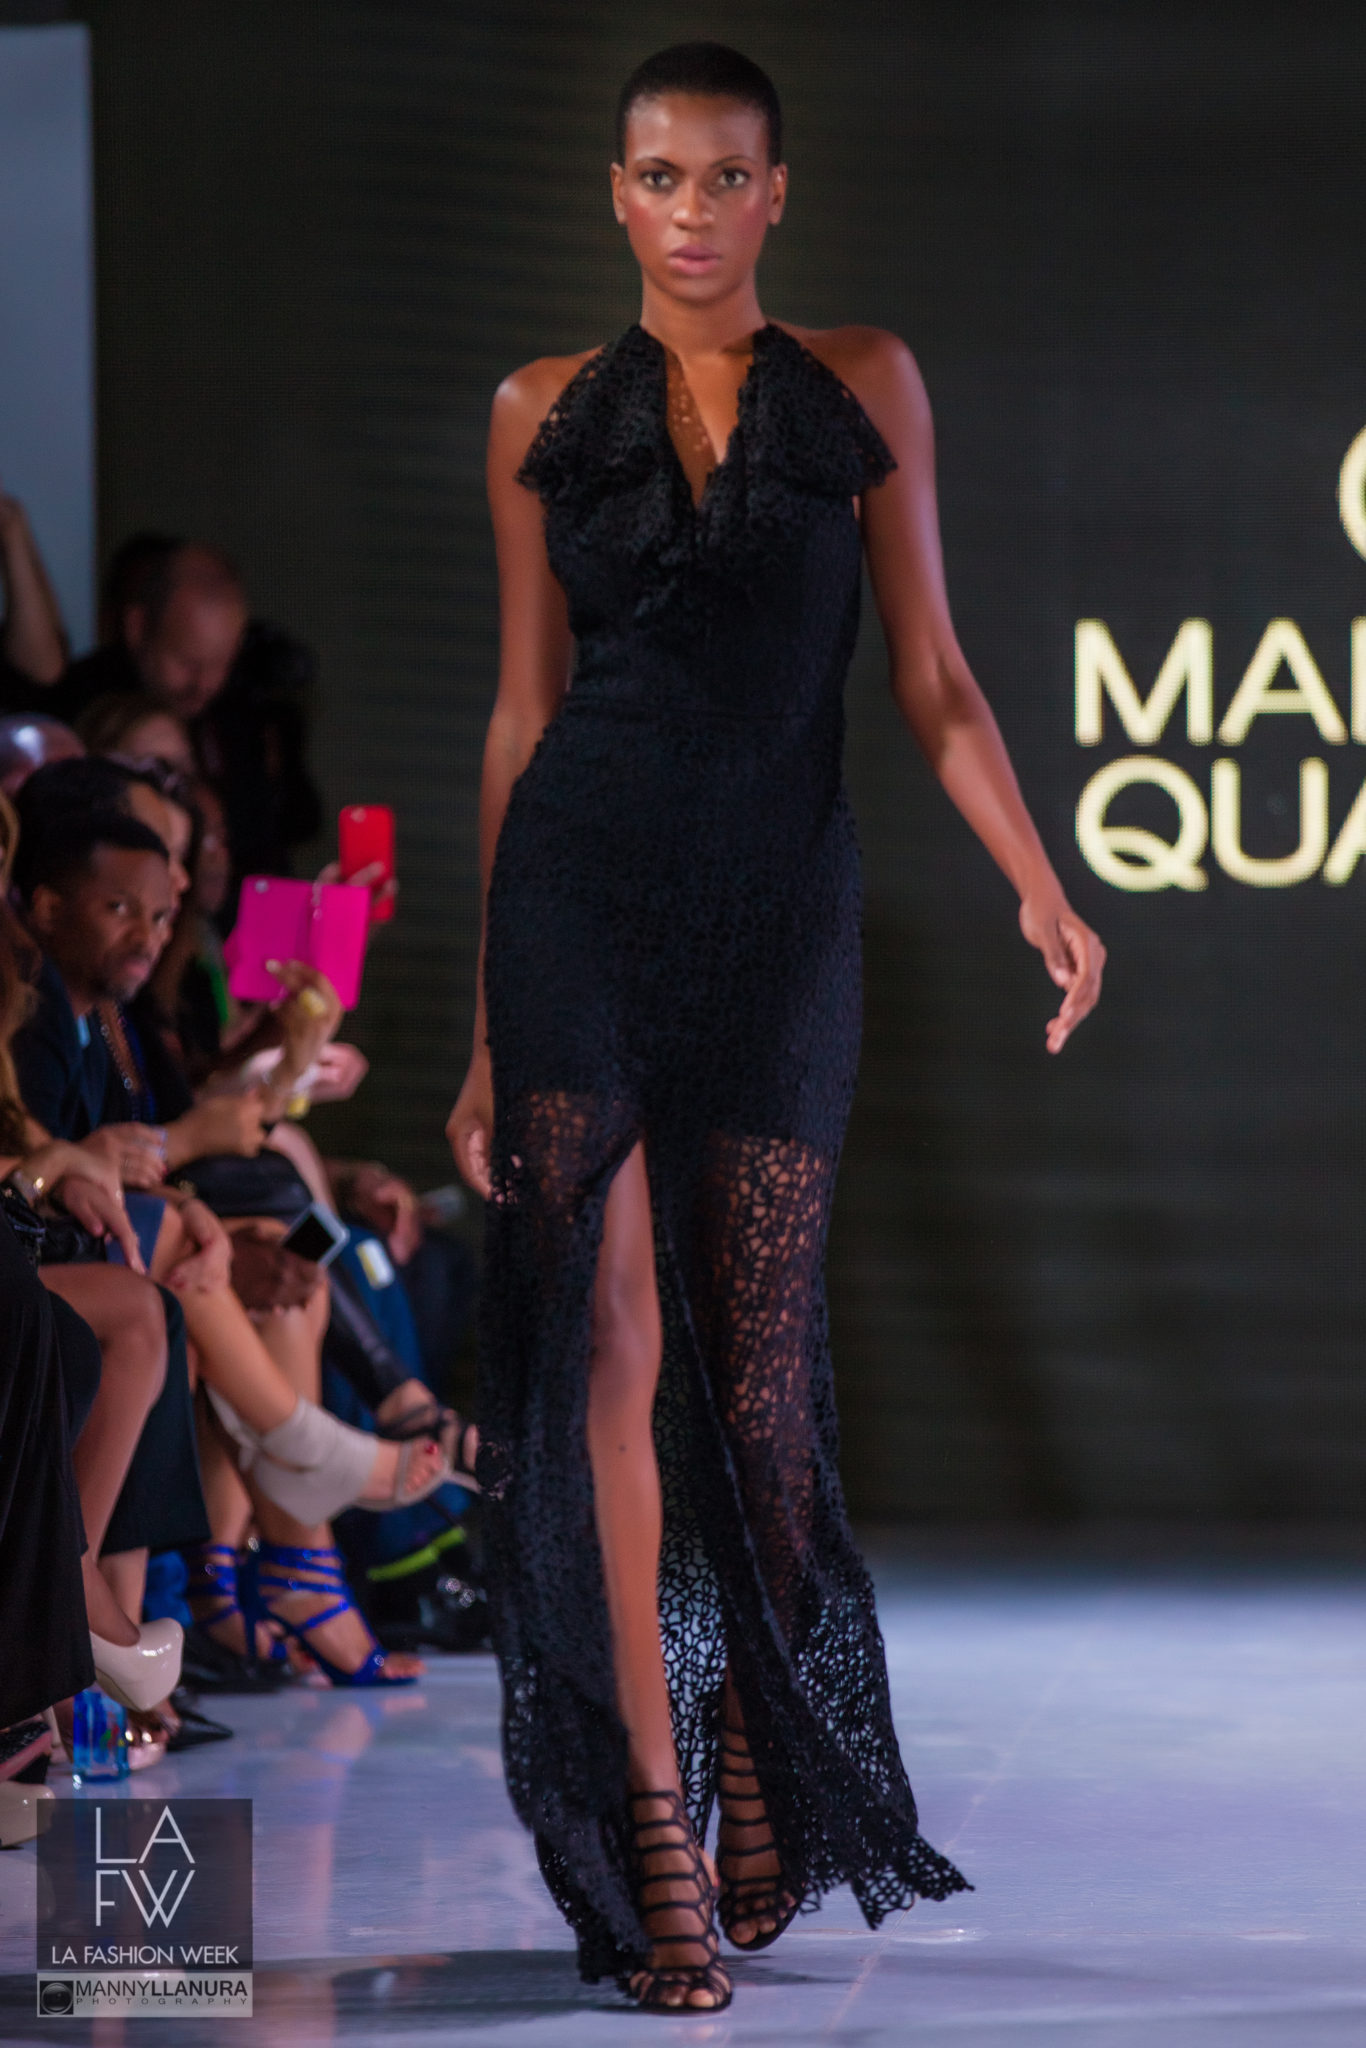 Marcelo Quadros LA Fashion Week 2016